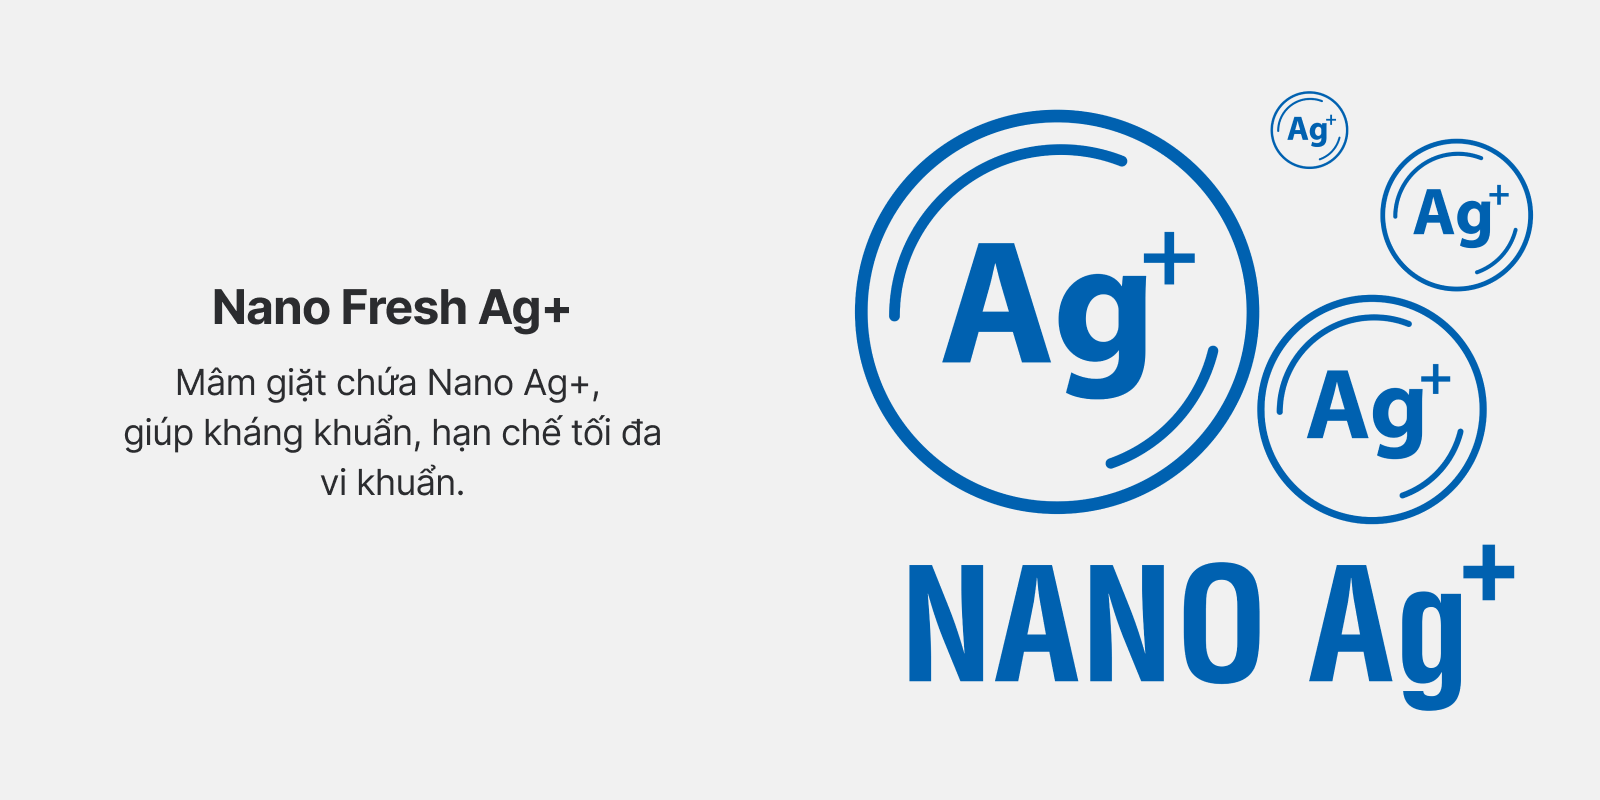 Nano Fresh Ag+